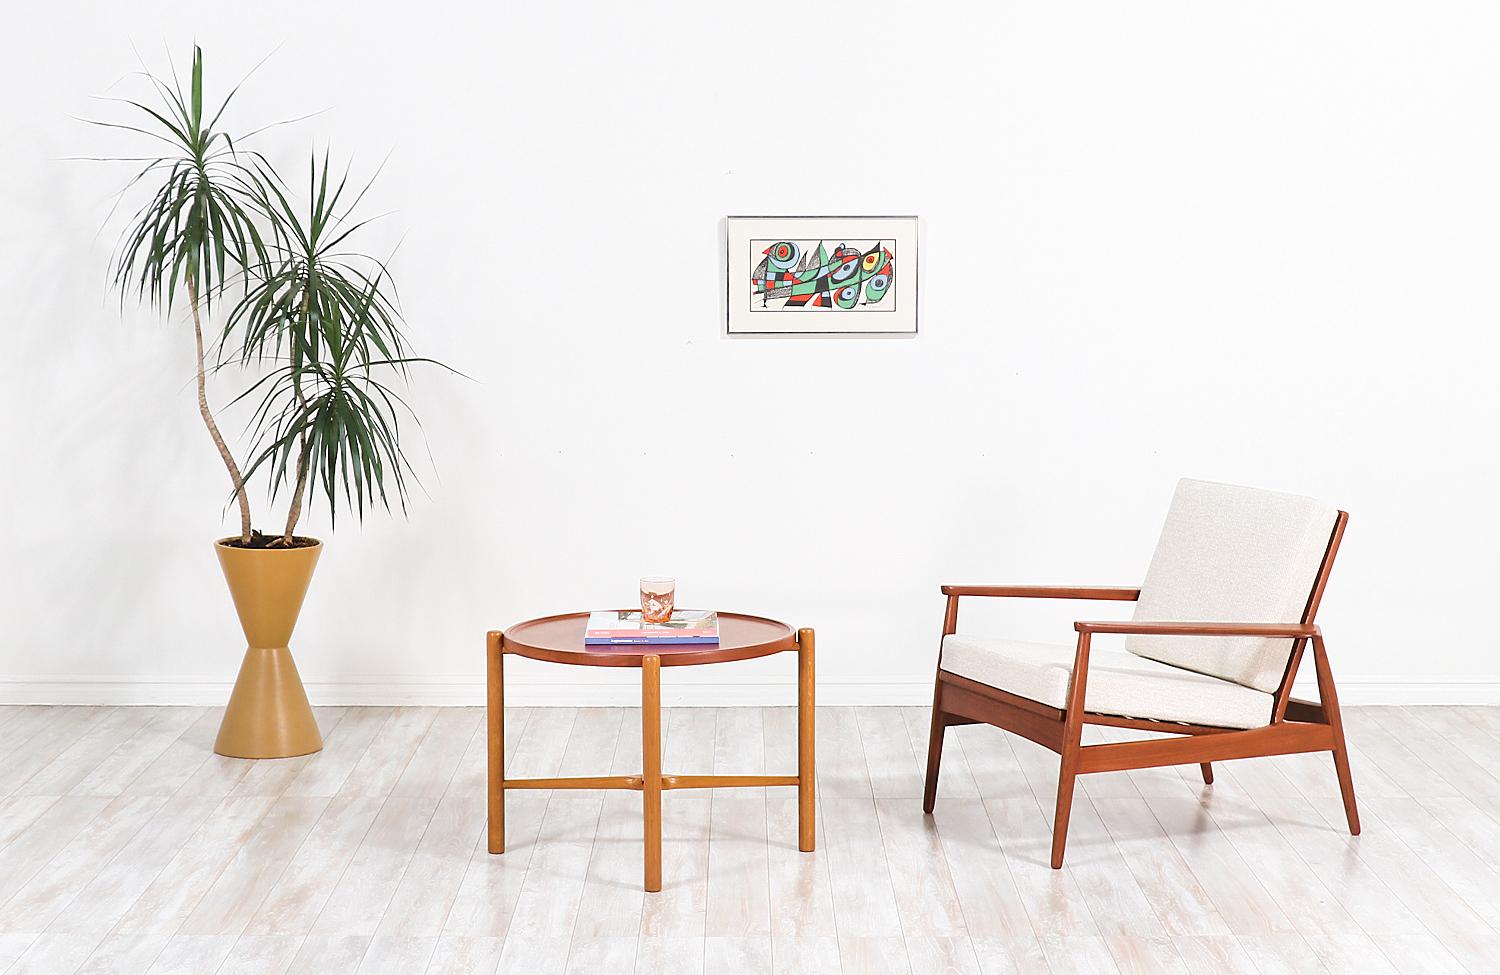 Stilvoller moderner dänischer Loungesessel, entworfen und hergestellt in Dänemark, ca. 1950er Jahre. Dieser elegante Stuhl hat ein Gestell aus massivem Teakholz mit organischem Design, geschwungenen Armlehnen und einer Rückenlehne mit Lattenrost für